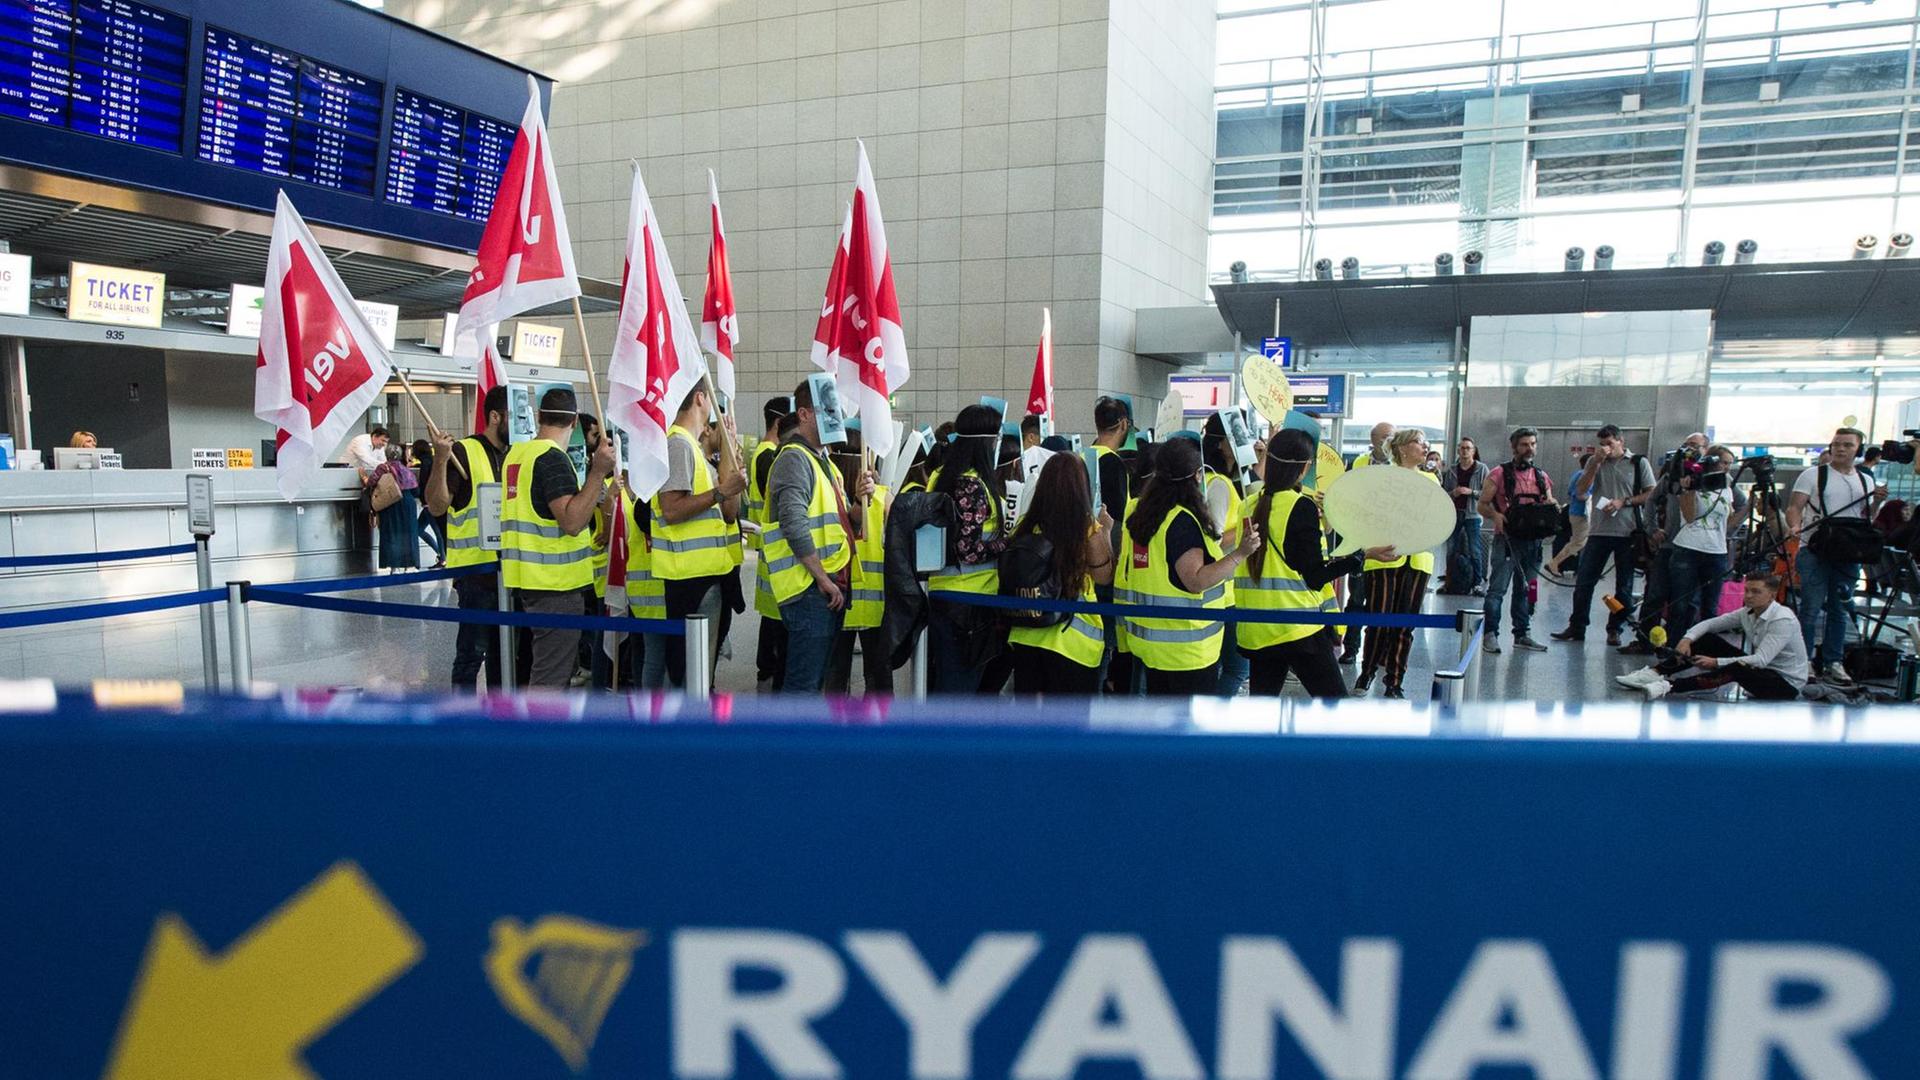 dpatopbilder - Mitarbeitern der Fluglinie Ryanair haben sich zu einem 24 Stunden dauernden Warnstreiks vor dem Check-in Schalter der irischen Fluggesellschaft versammelt haben. Die Gewerkschaften Cockpit und Verdi hatten zu dem Warnstreik aufgerufen. Foto: Silas Stein/dpa | Verwendung weltweit